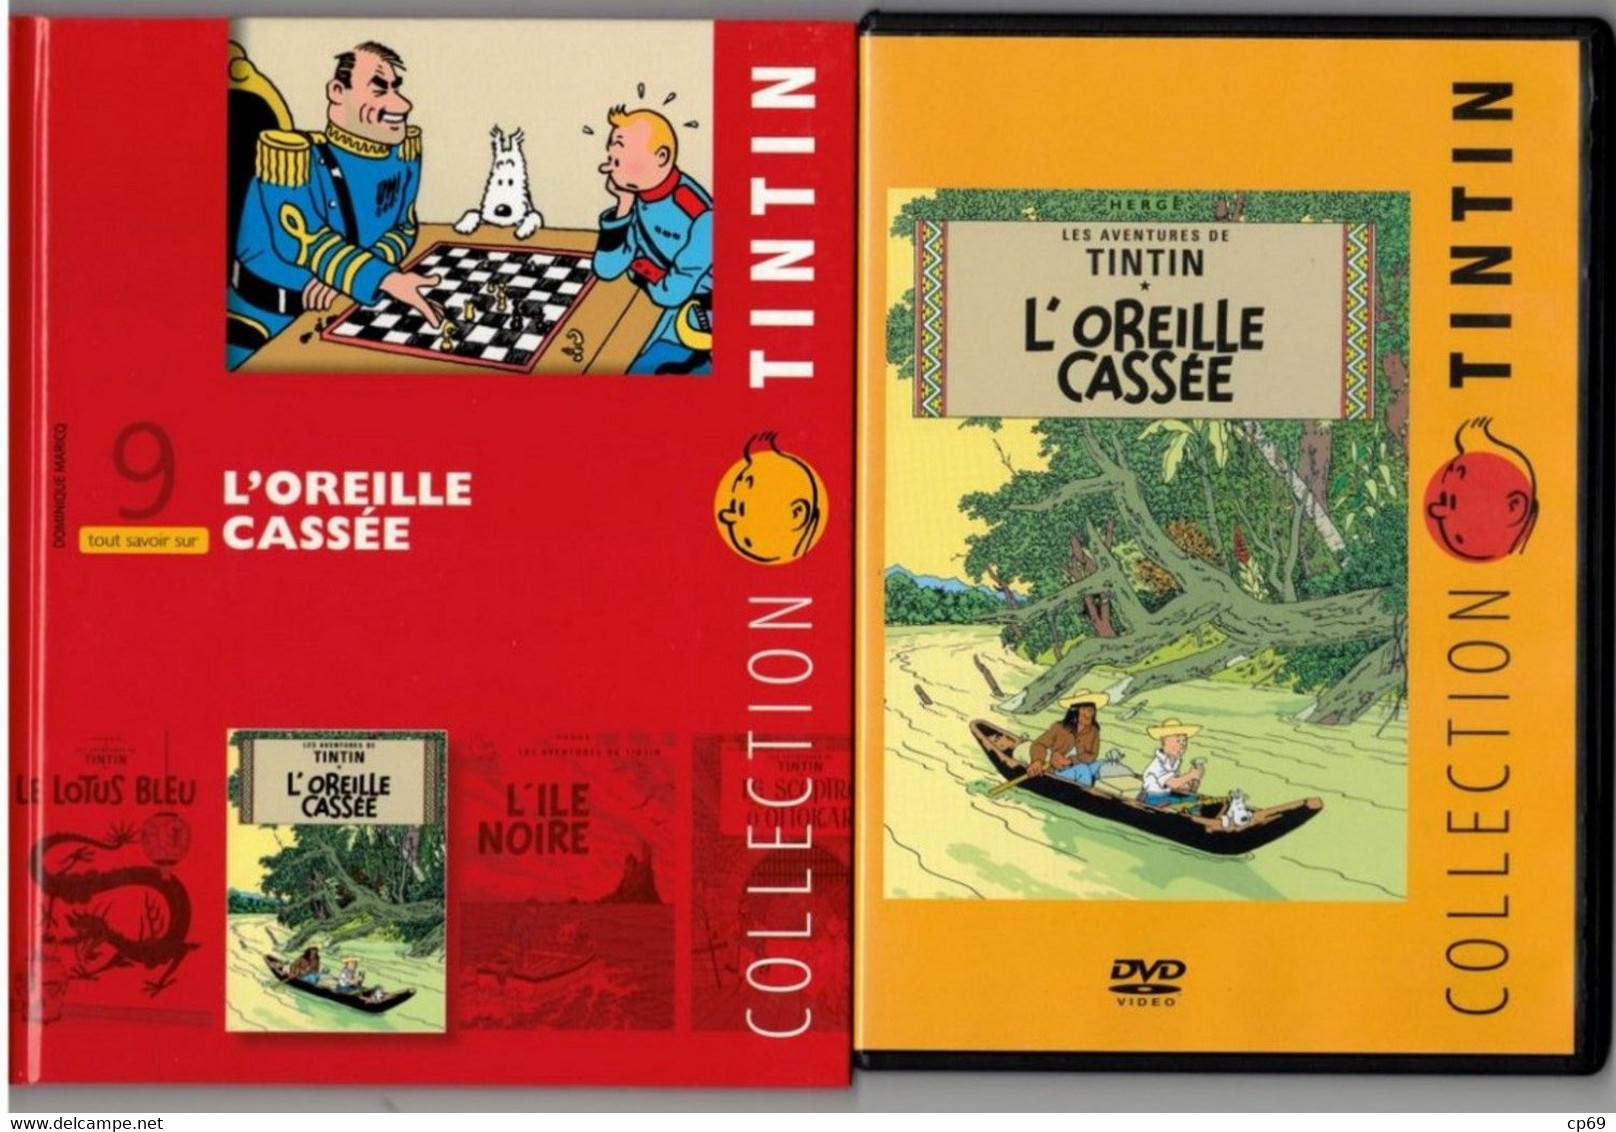 Tintin Hergé / Moulinsart 2010 Milou Chien Dog Cane L'Oreille Cassée N°9 DVD + Livret Explicatif En B.Etat - Dessin Animé